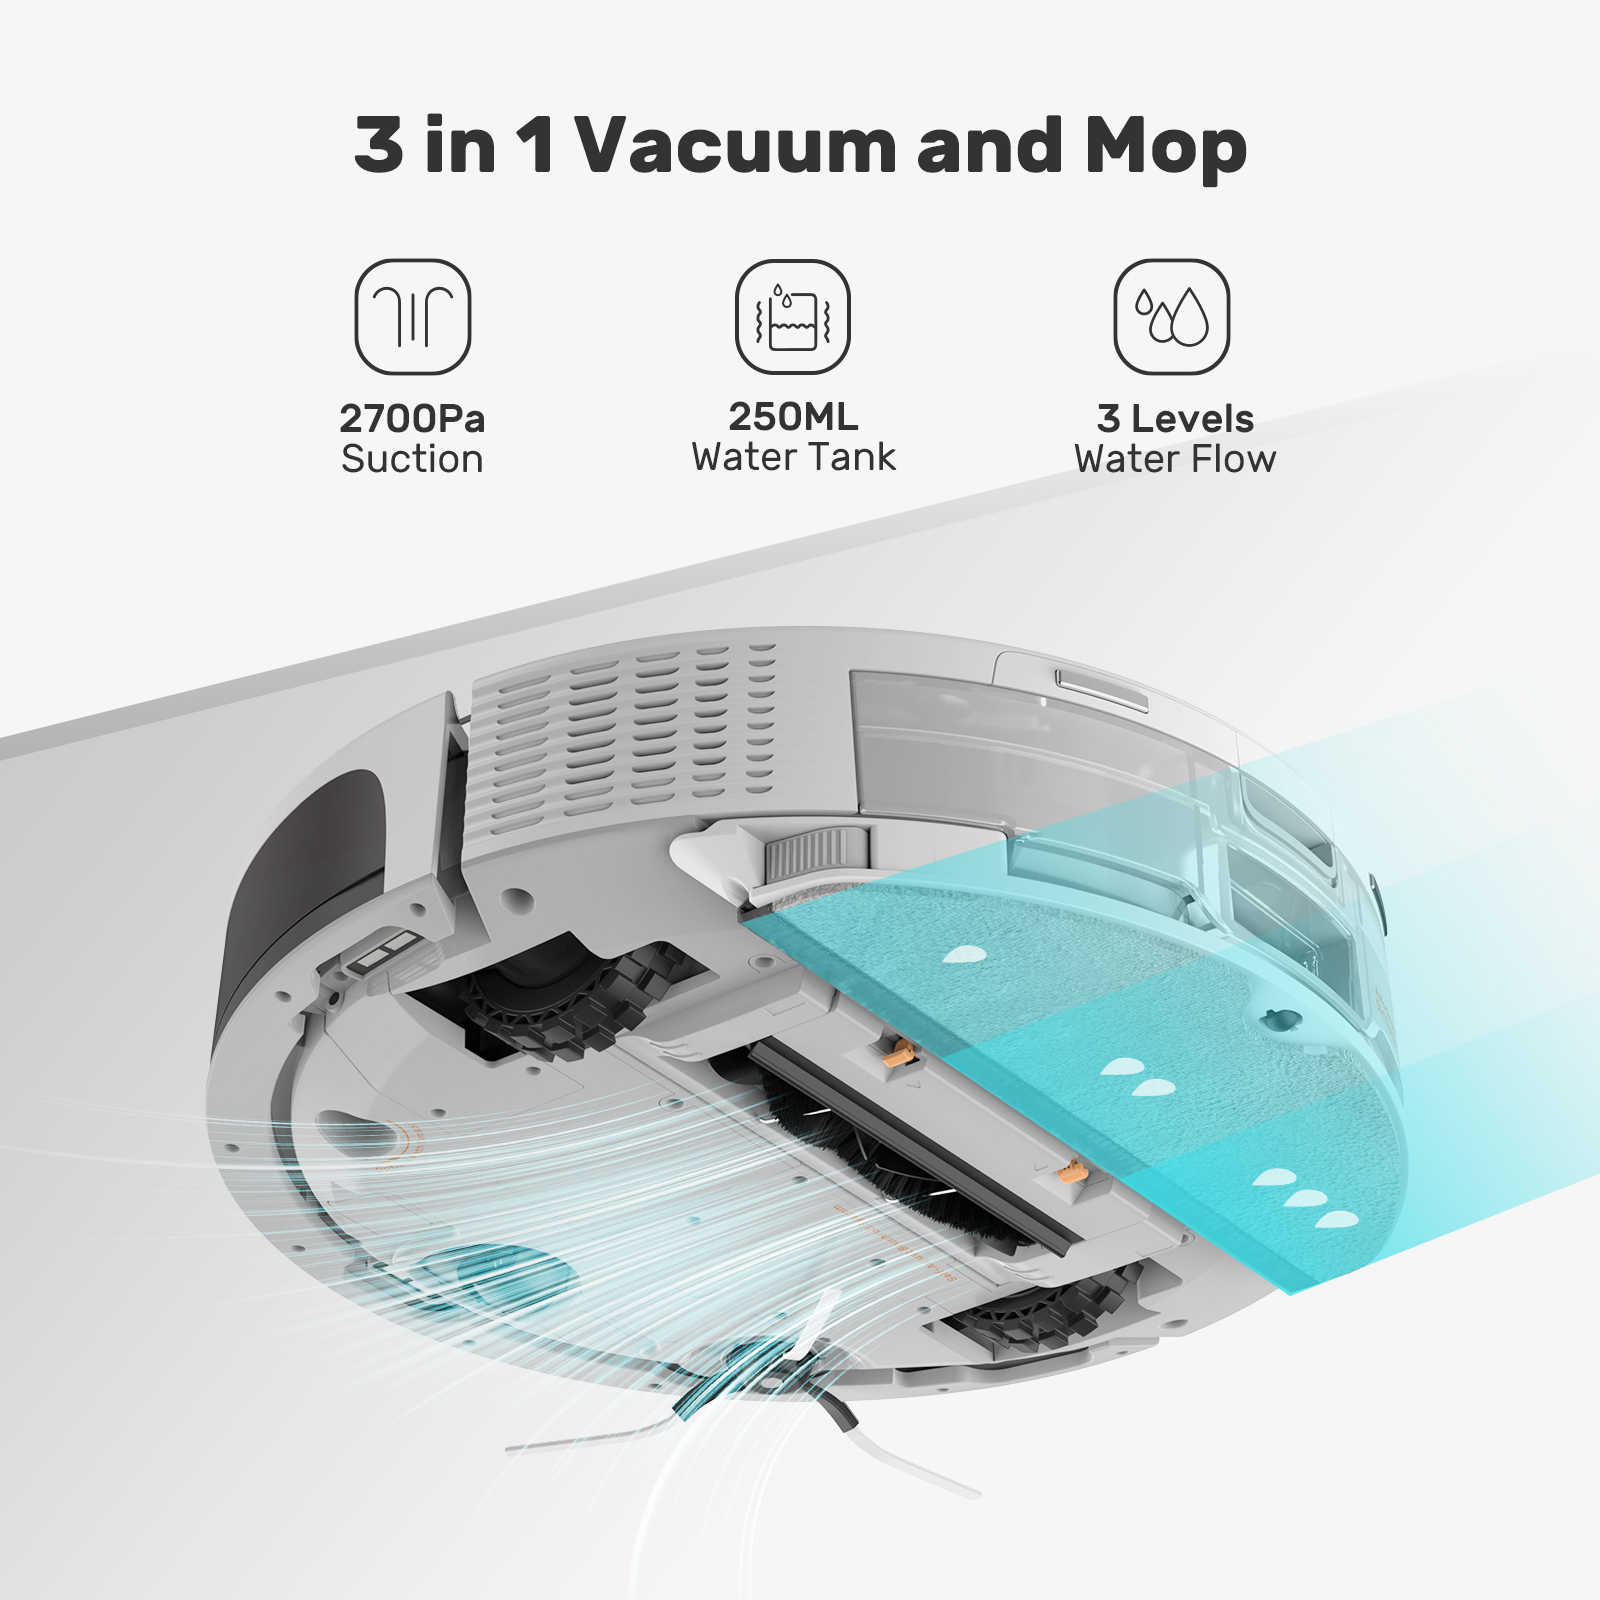 E60m Pro robot vacuum cleaner